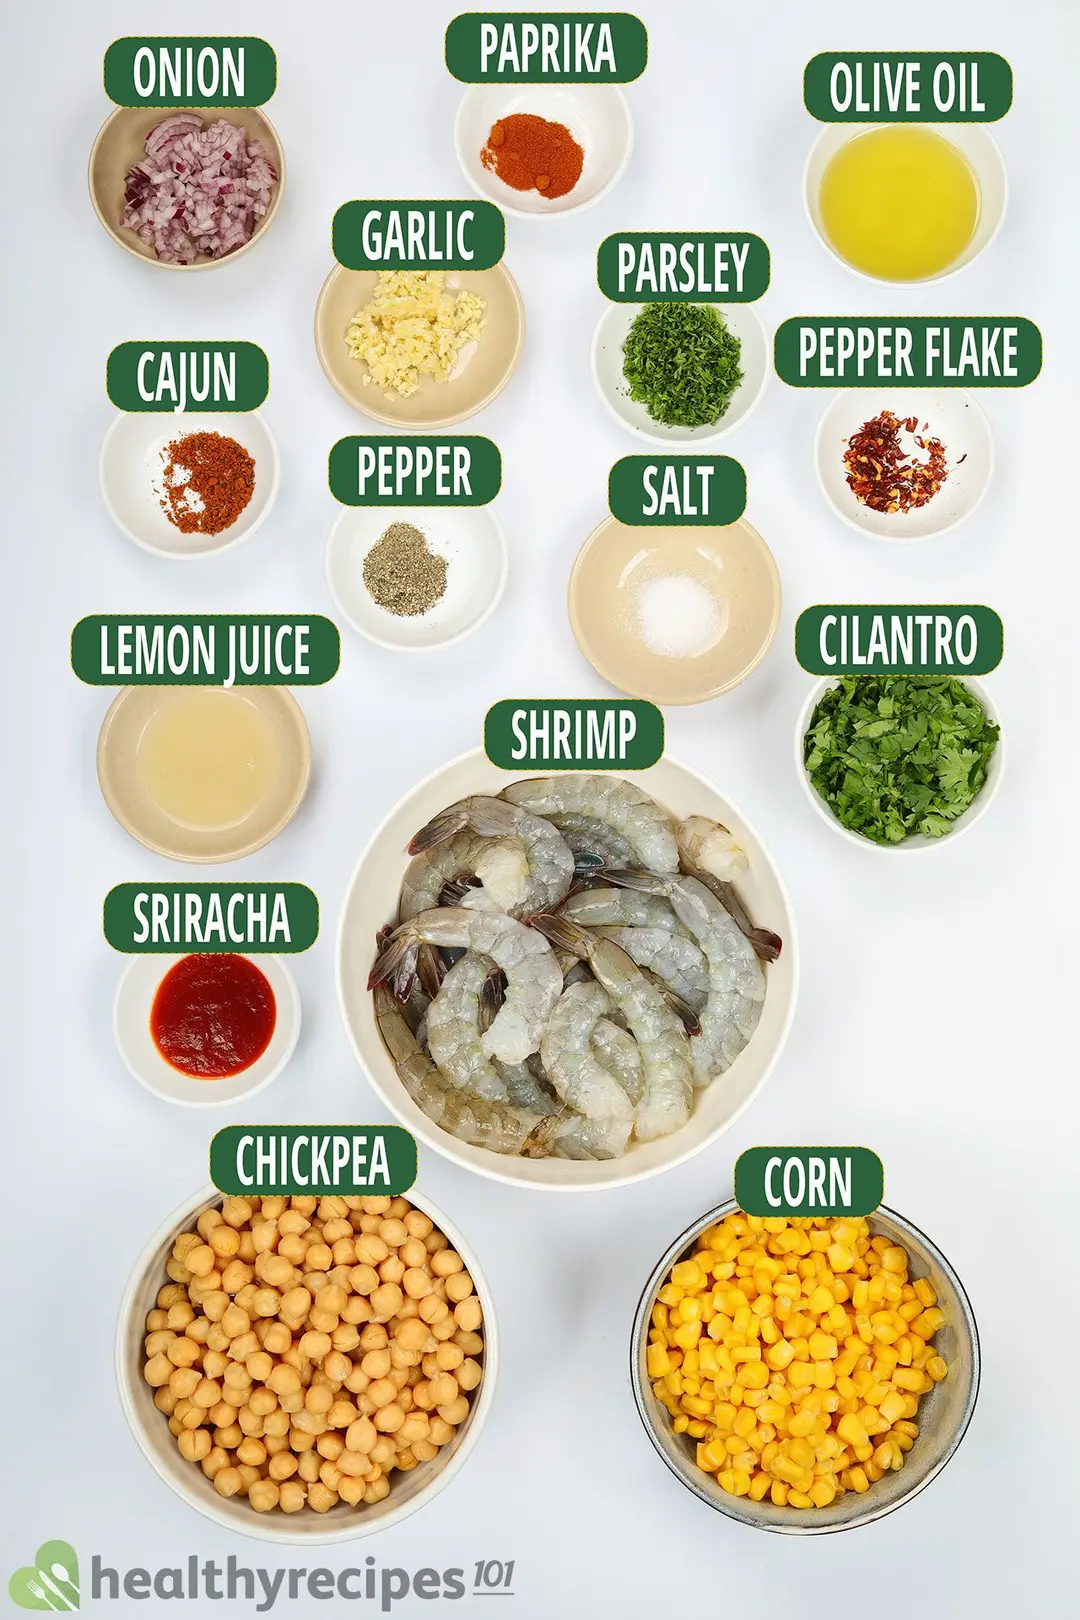 Ingredients for Shrimp Marinade